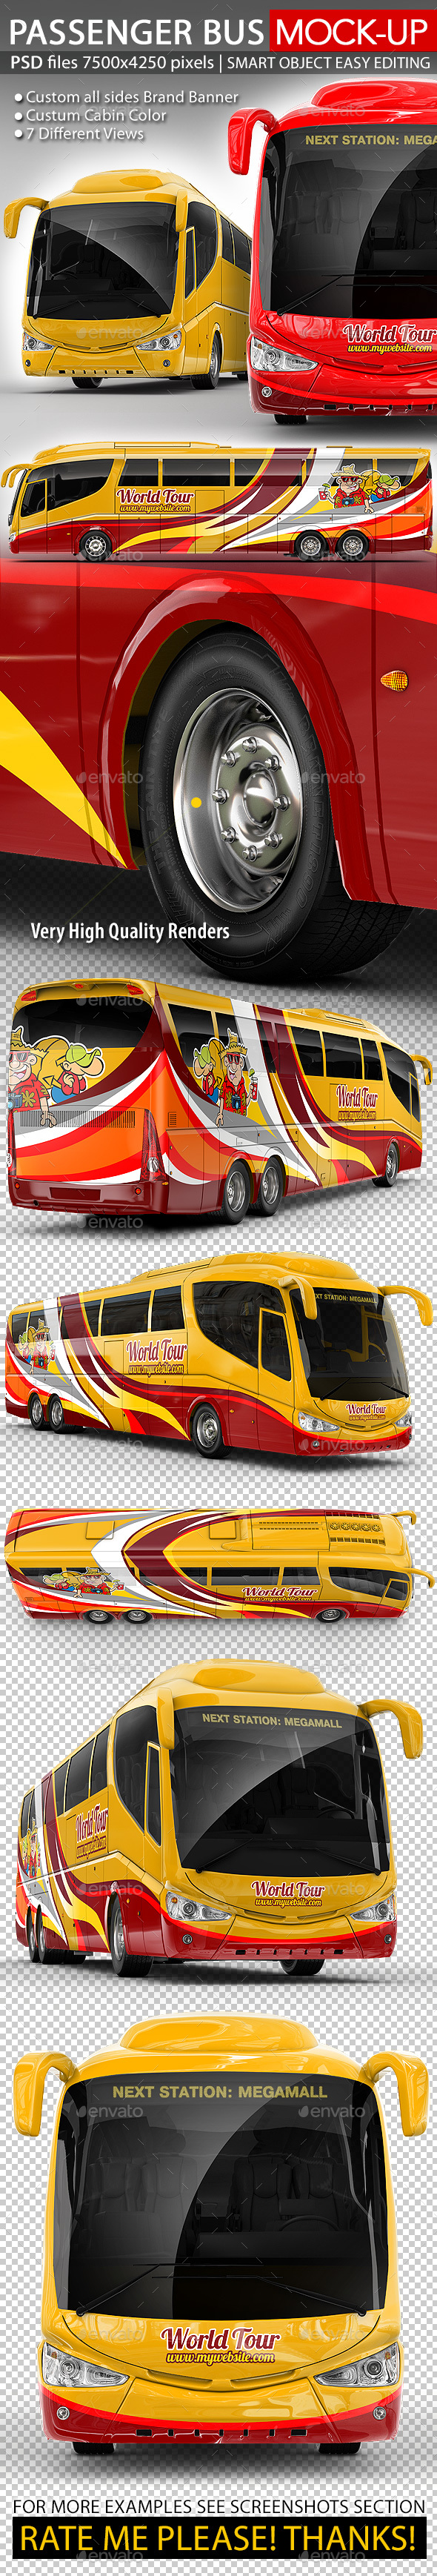 Tourist Bus, Passenger Coach Mock-Up